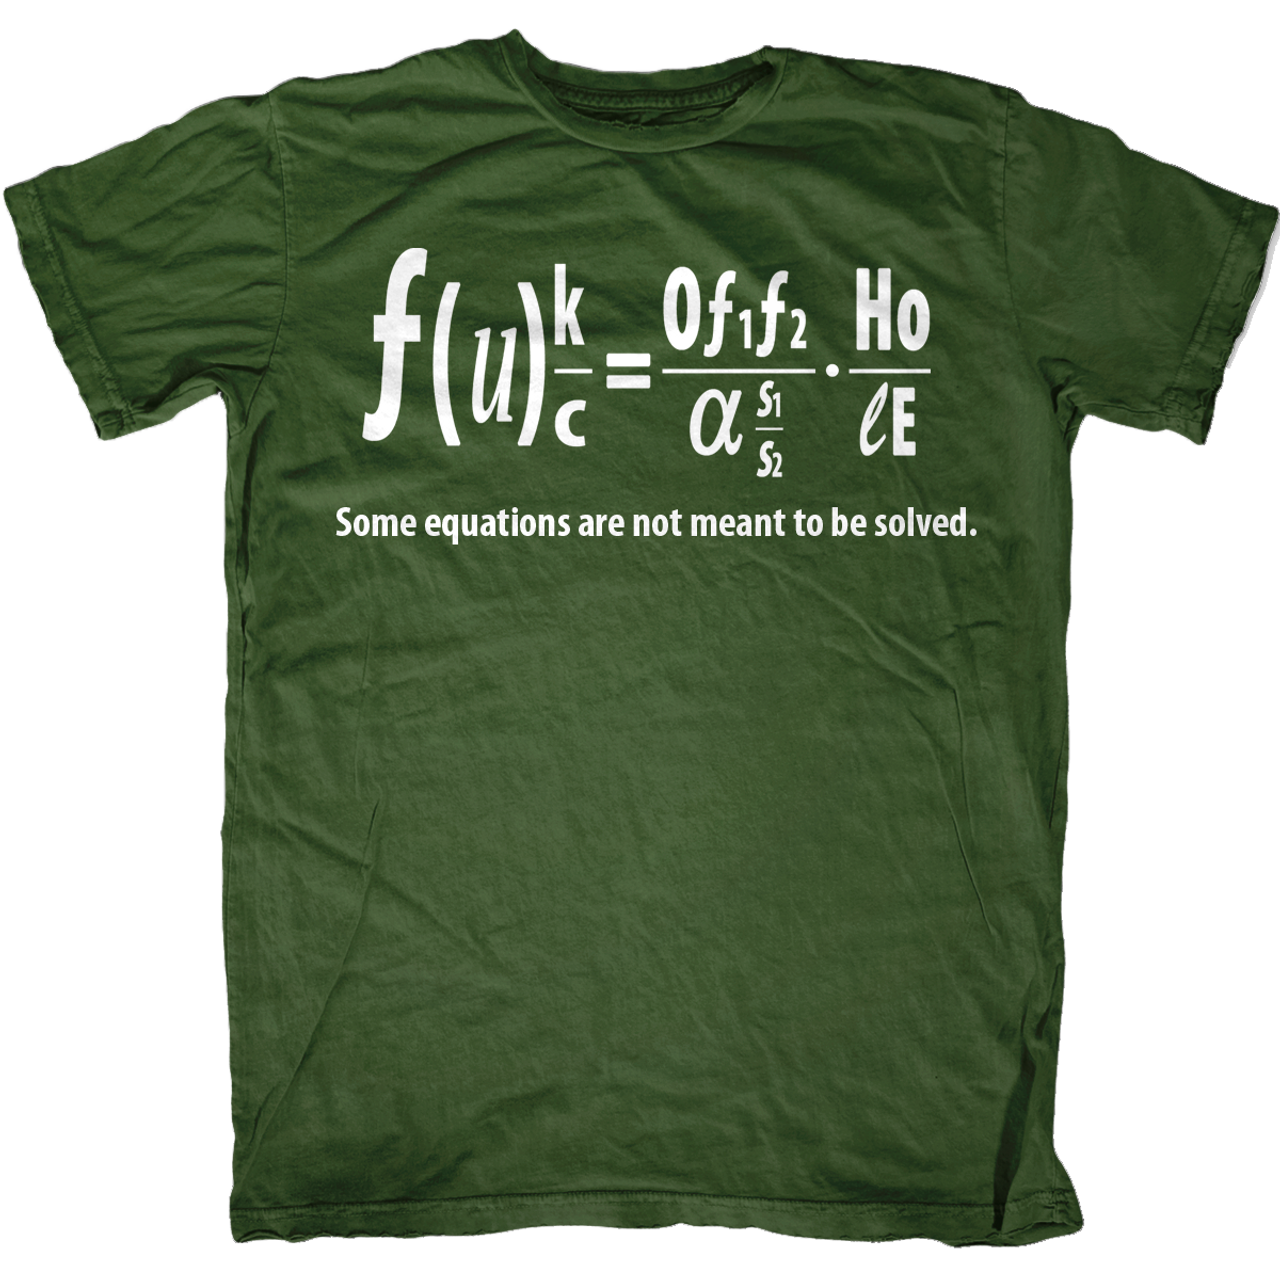 Bad Equation T-Shirt - Amendment Tees Co. Inc.